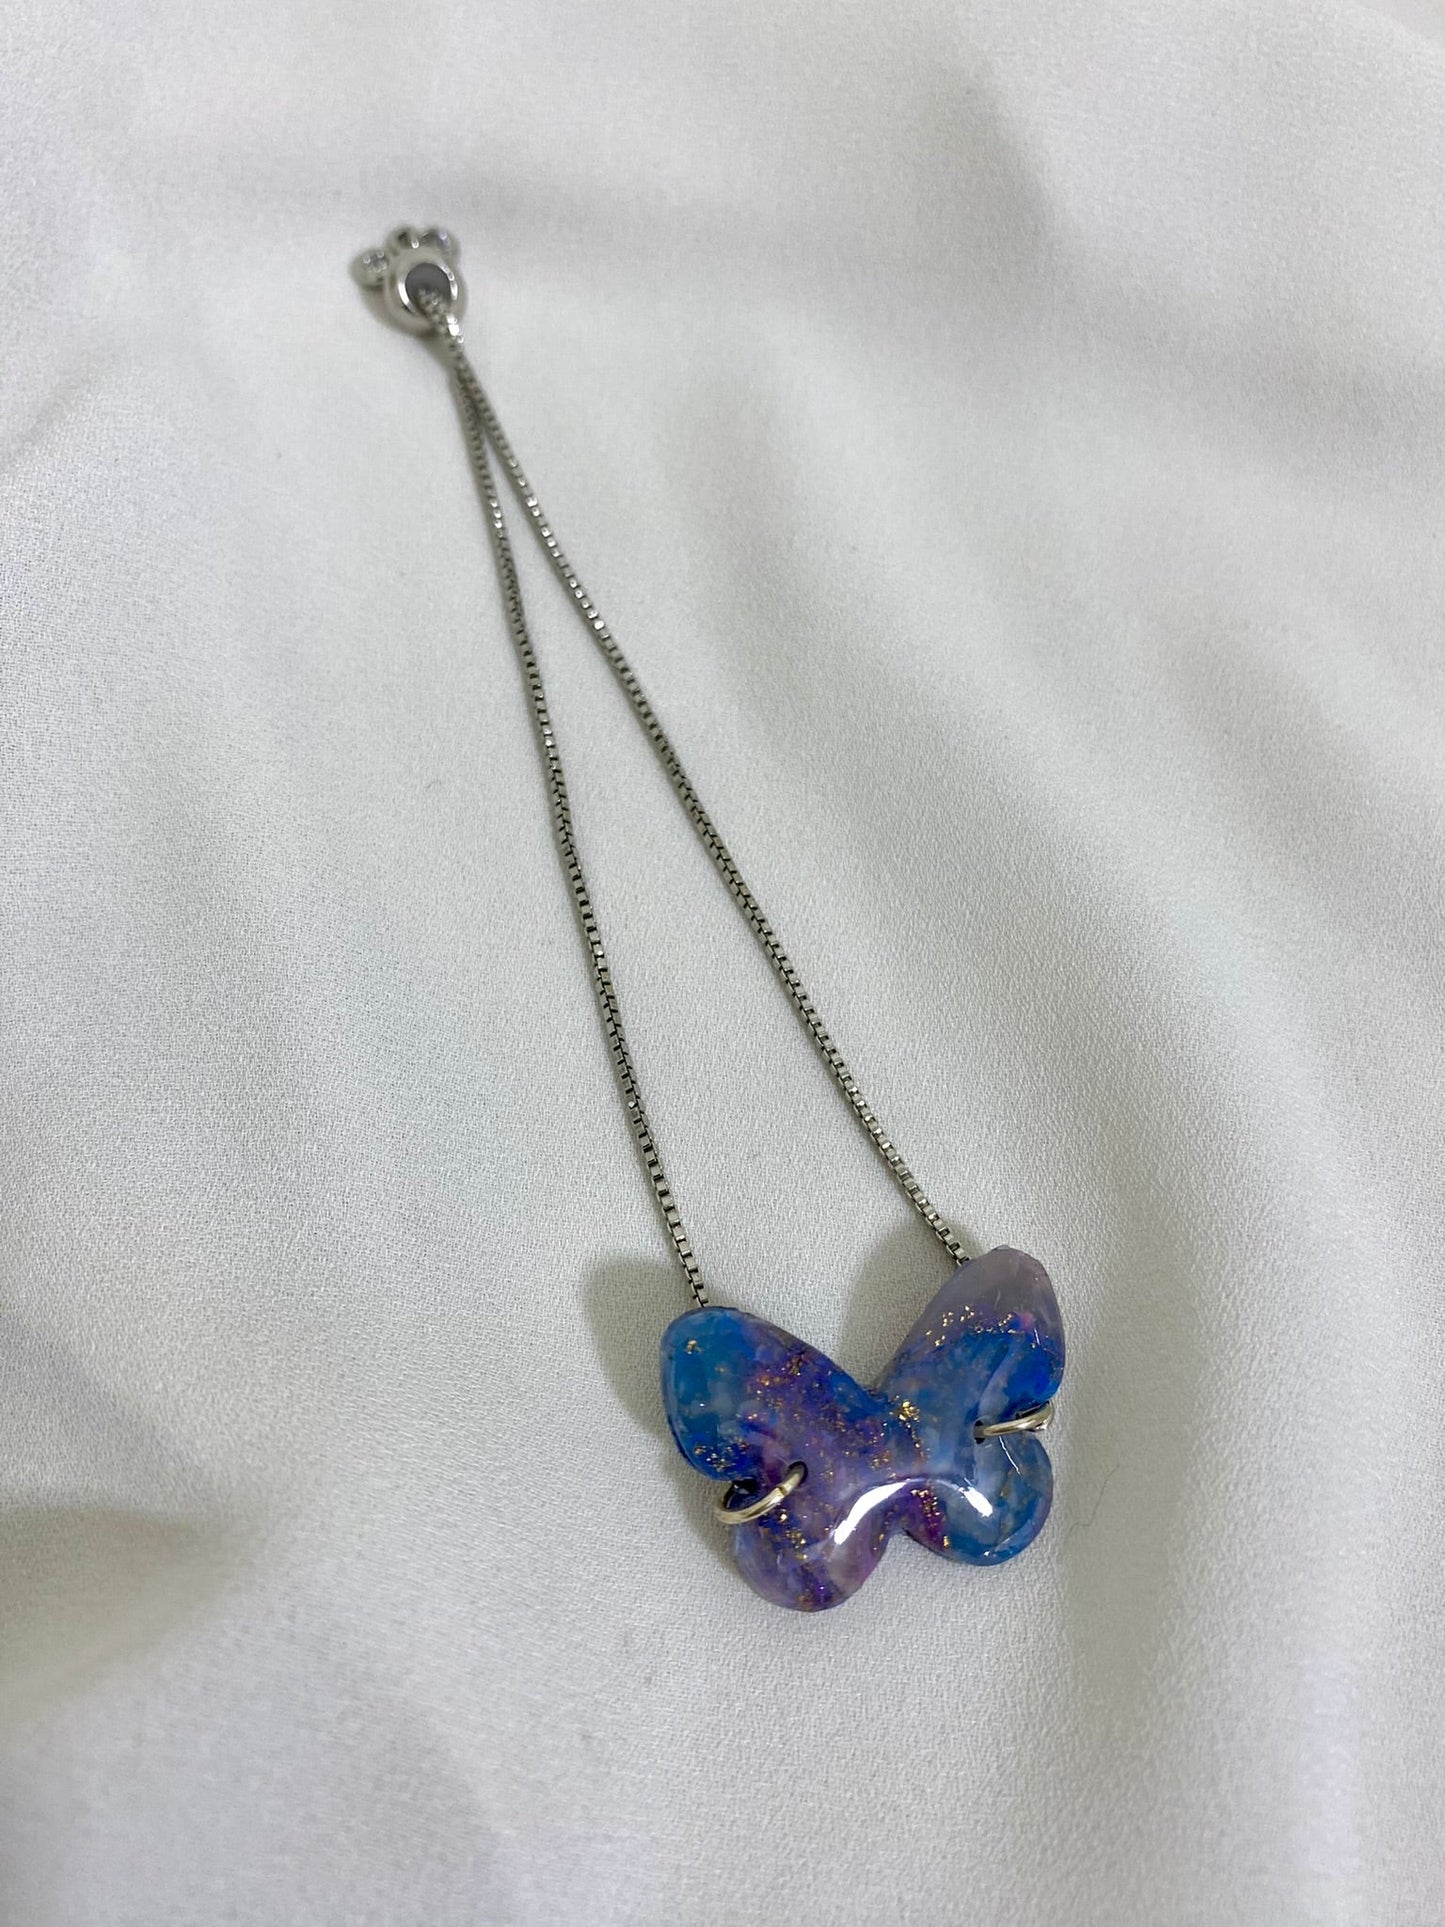 Cosmic Butterfly Silver Chain - Adjustable Bracelet